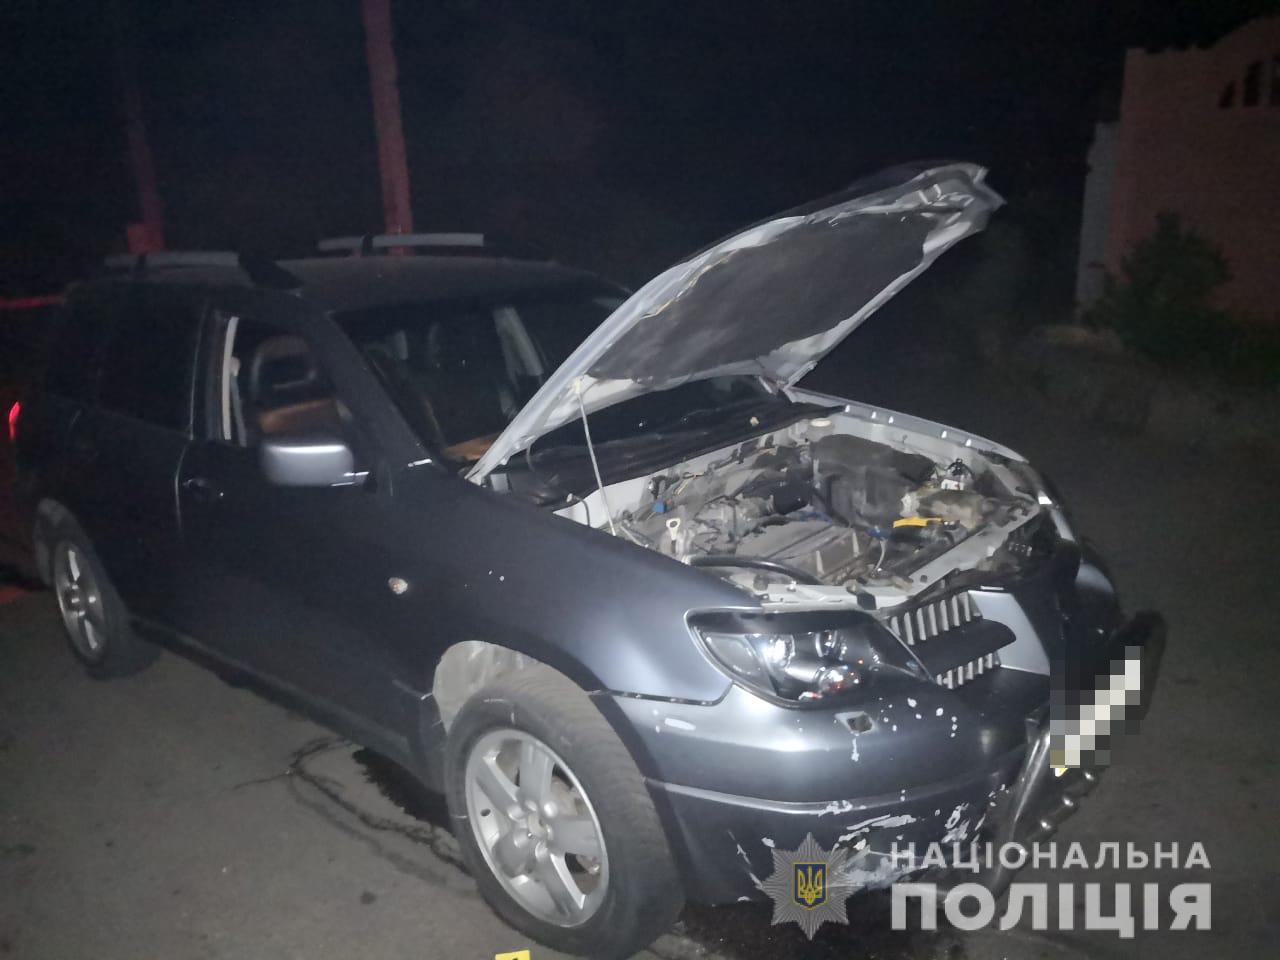 У Нікополі вибухнув автомобіль, є постраждалі. Фото: Нацполіція Дніпропетровської області